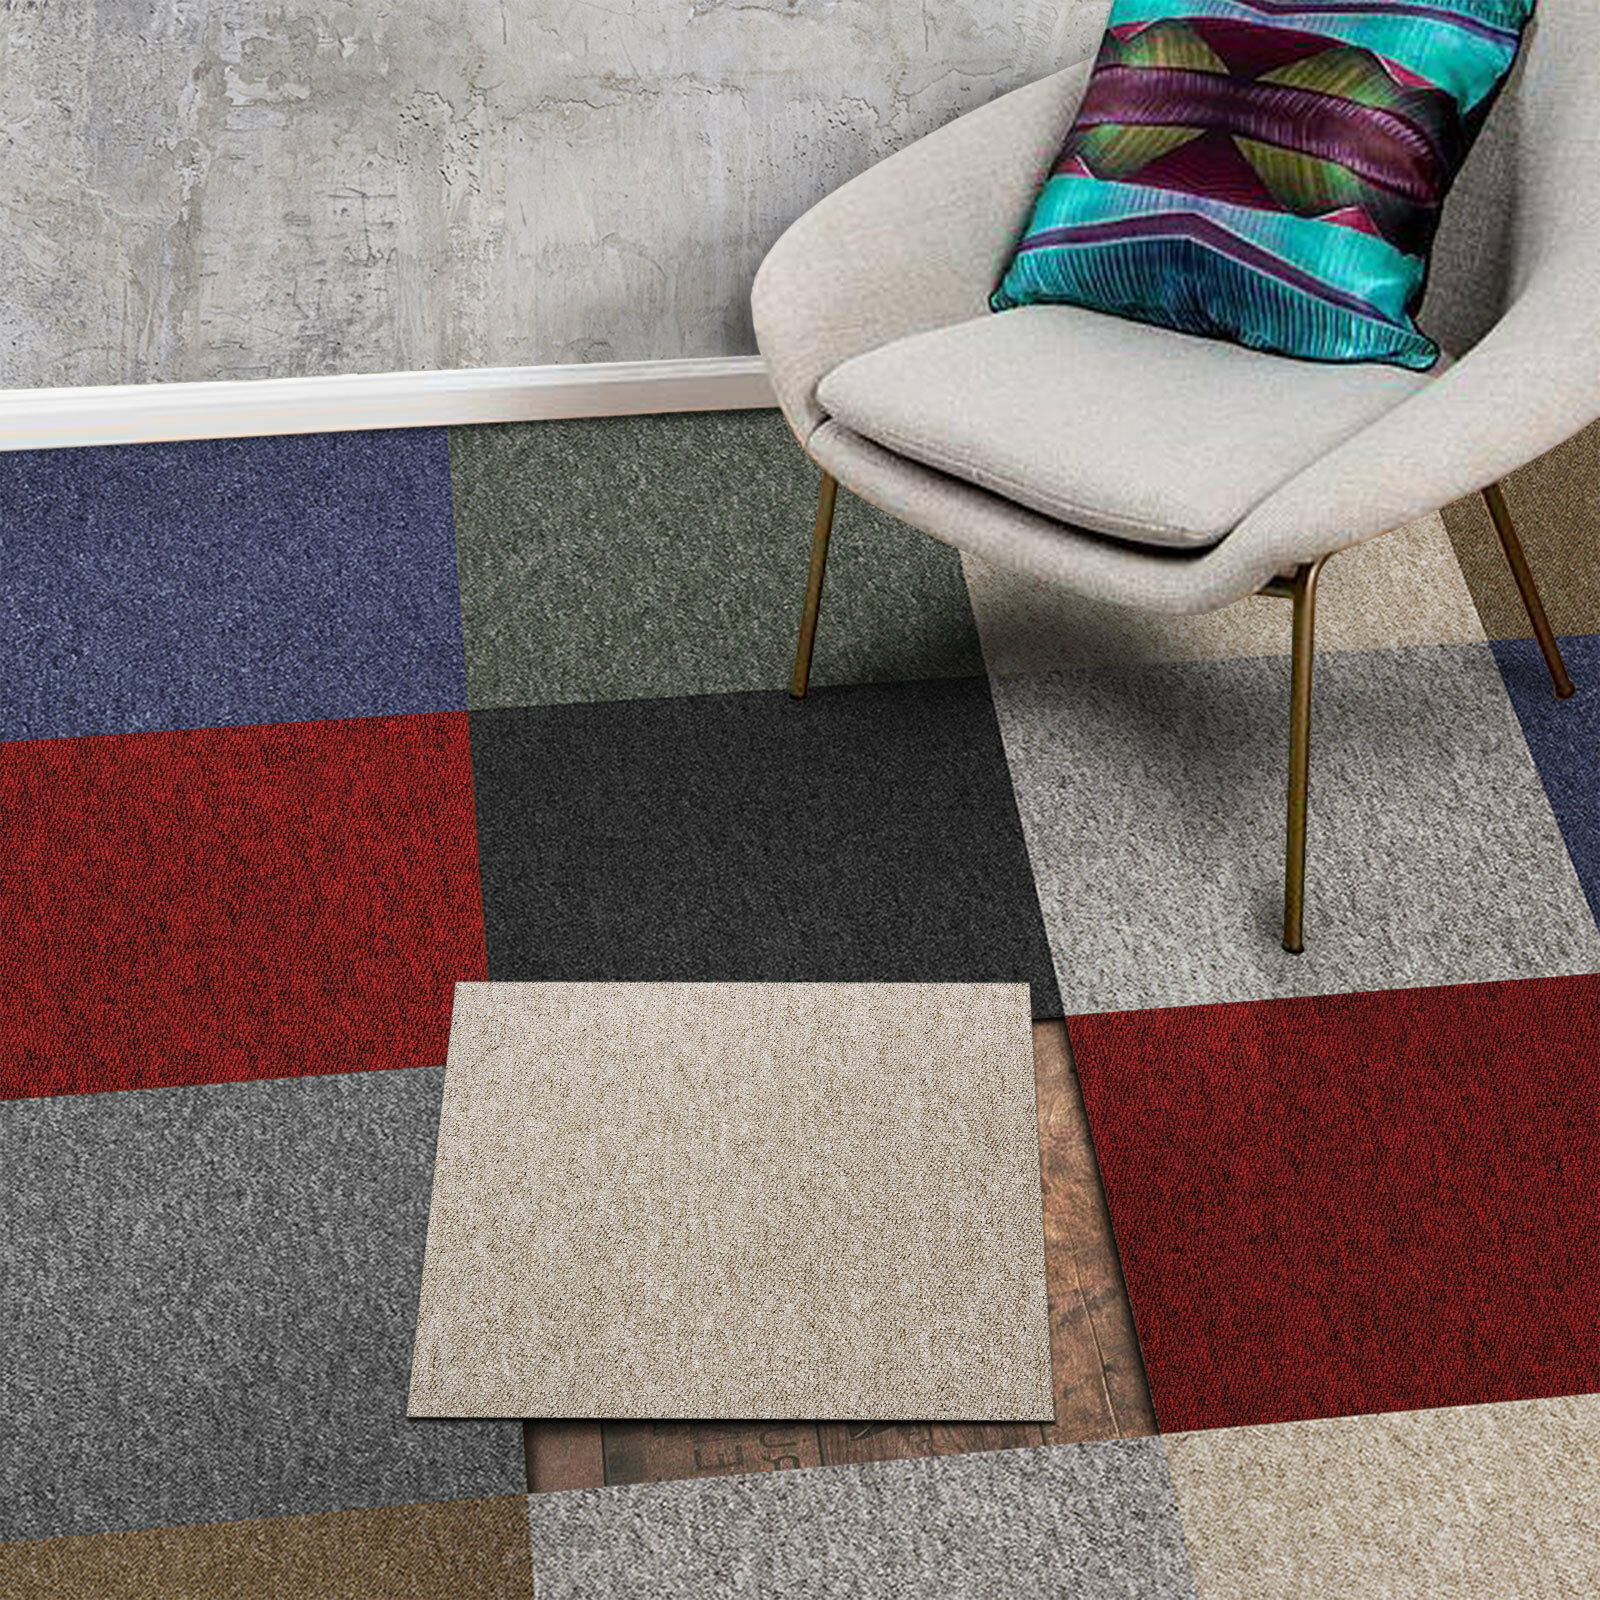 Floor carpet tiles, tread tiles, office carpets 5 colors